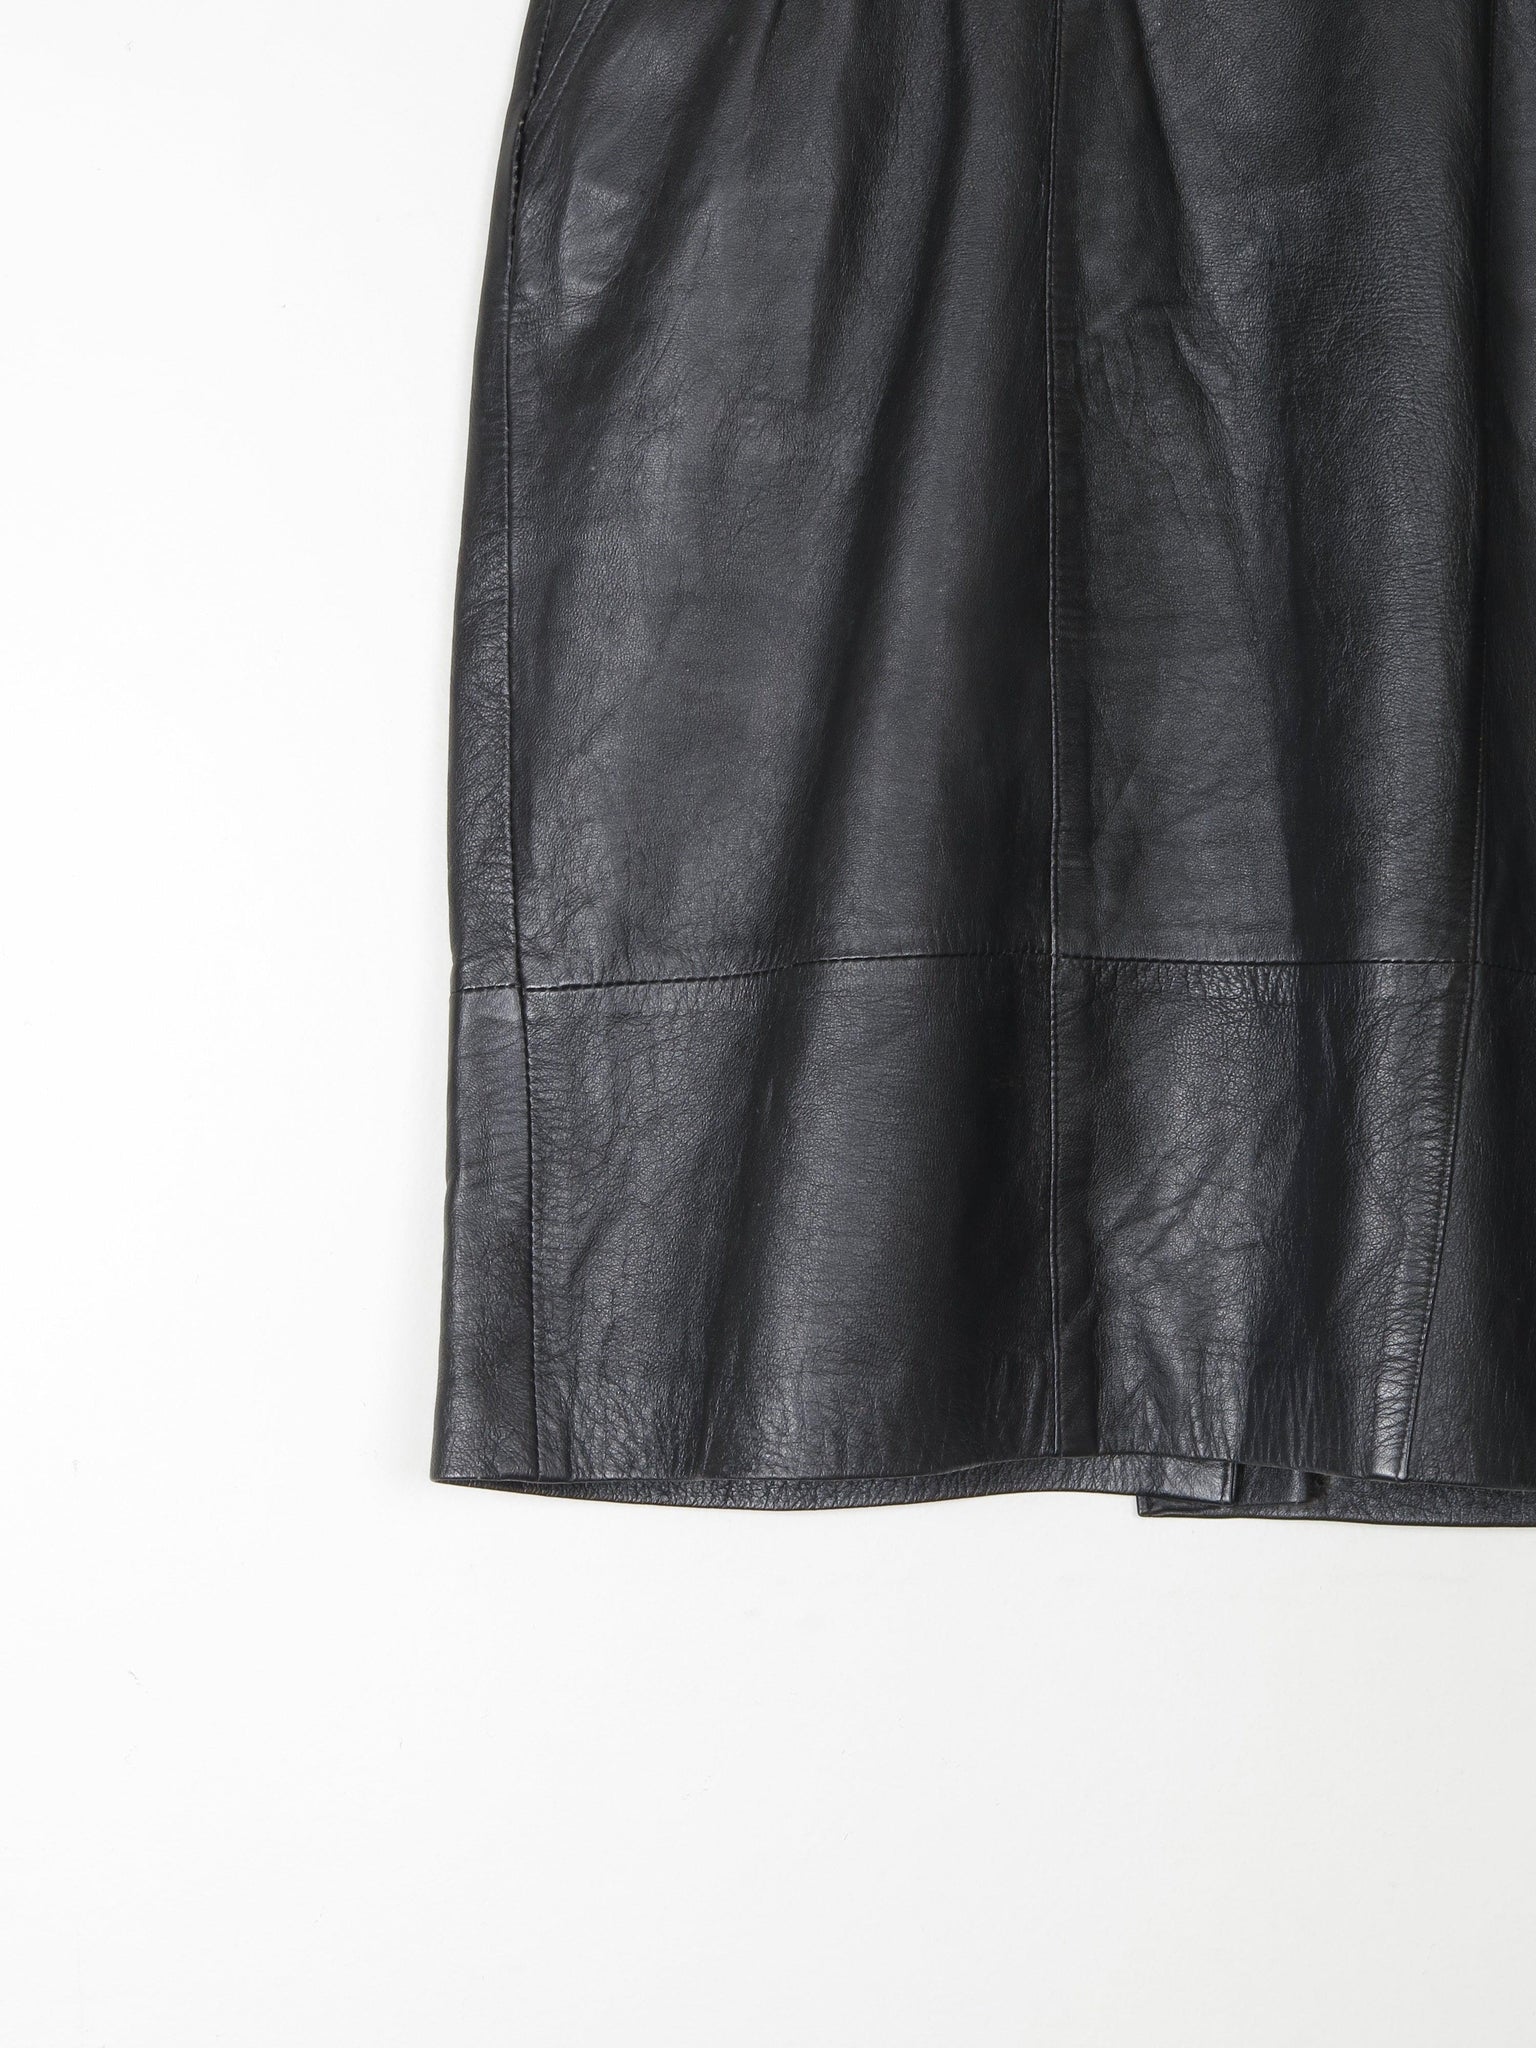 Black Leather Vintage Short Skirt 28" S - The Harlequin